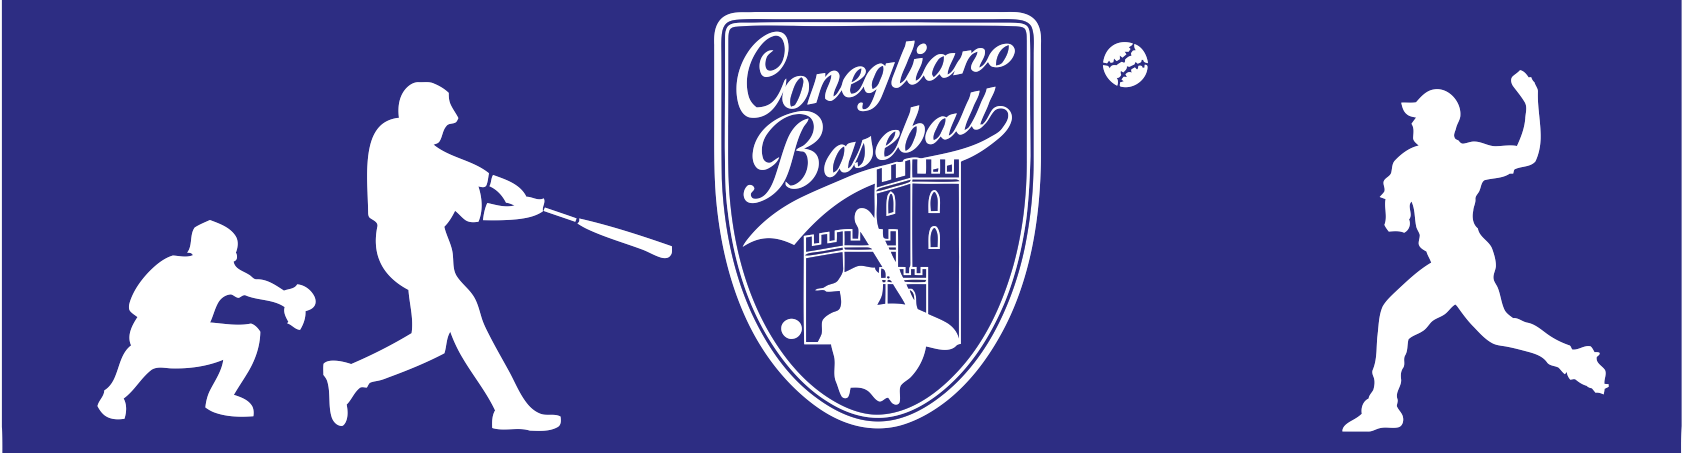 Baseball Club Conegliano 1971